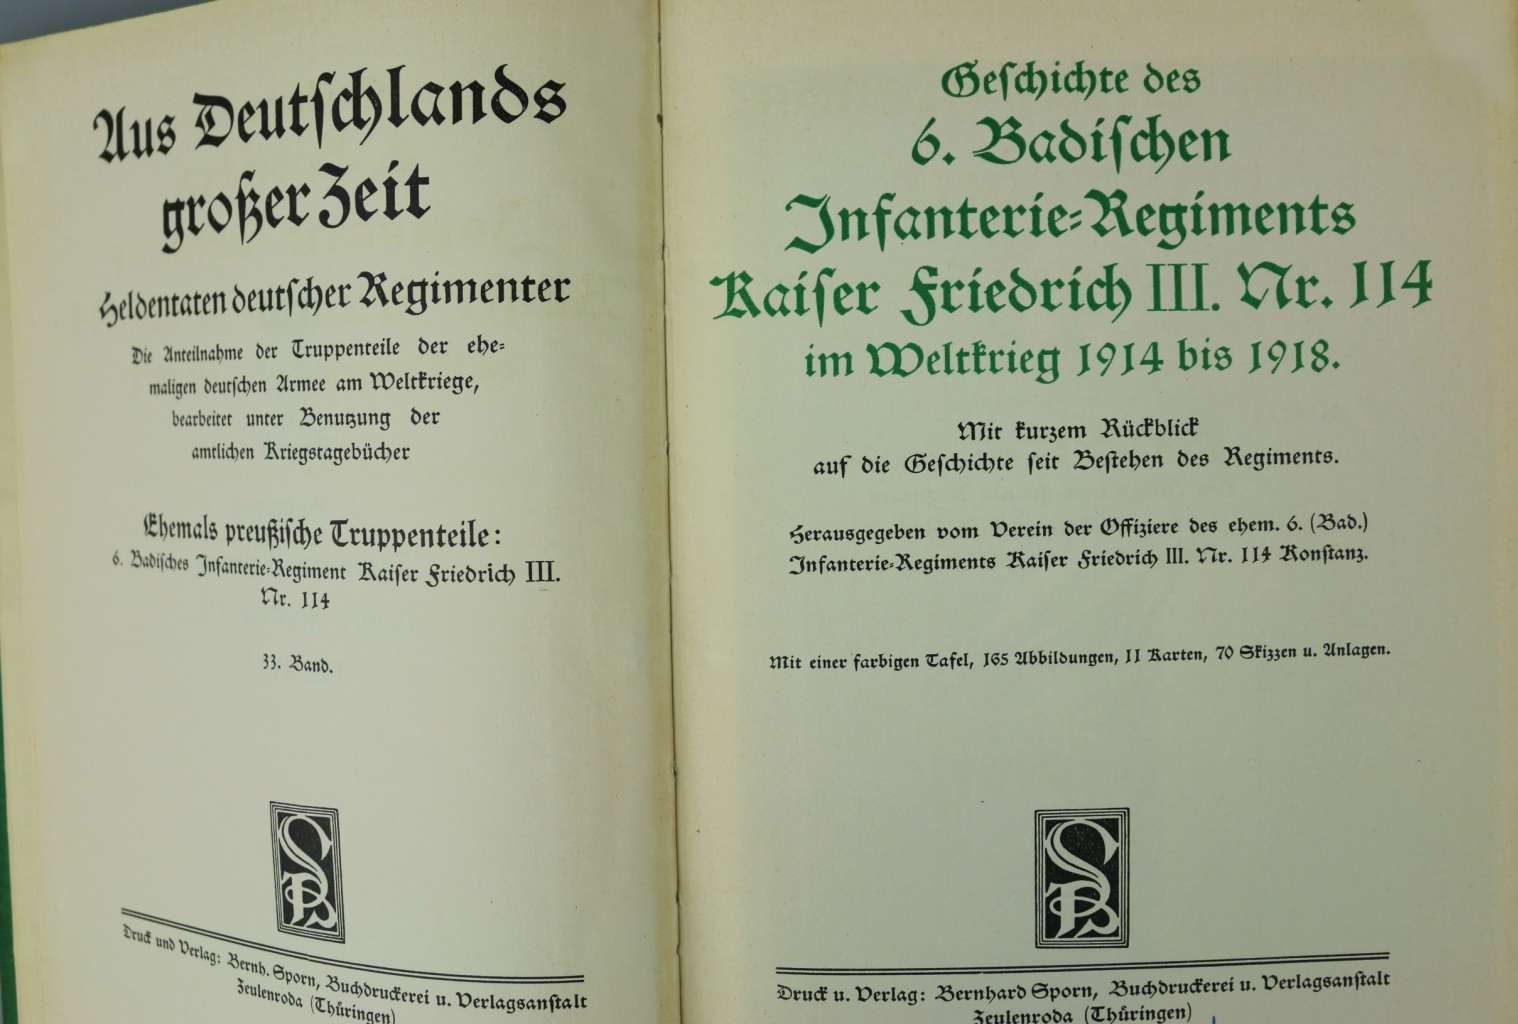 Geschichte des 6. Badischen Infanterie-Regiments Nr. 114 - Image 2 of 2